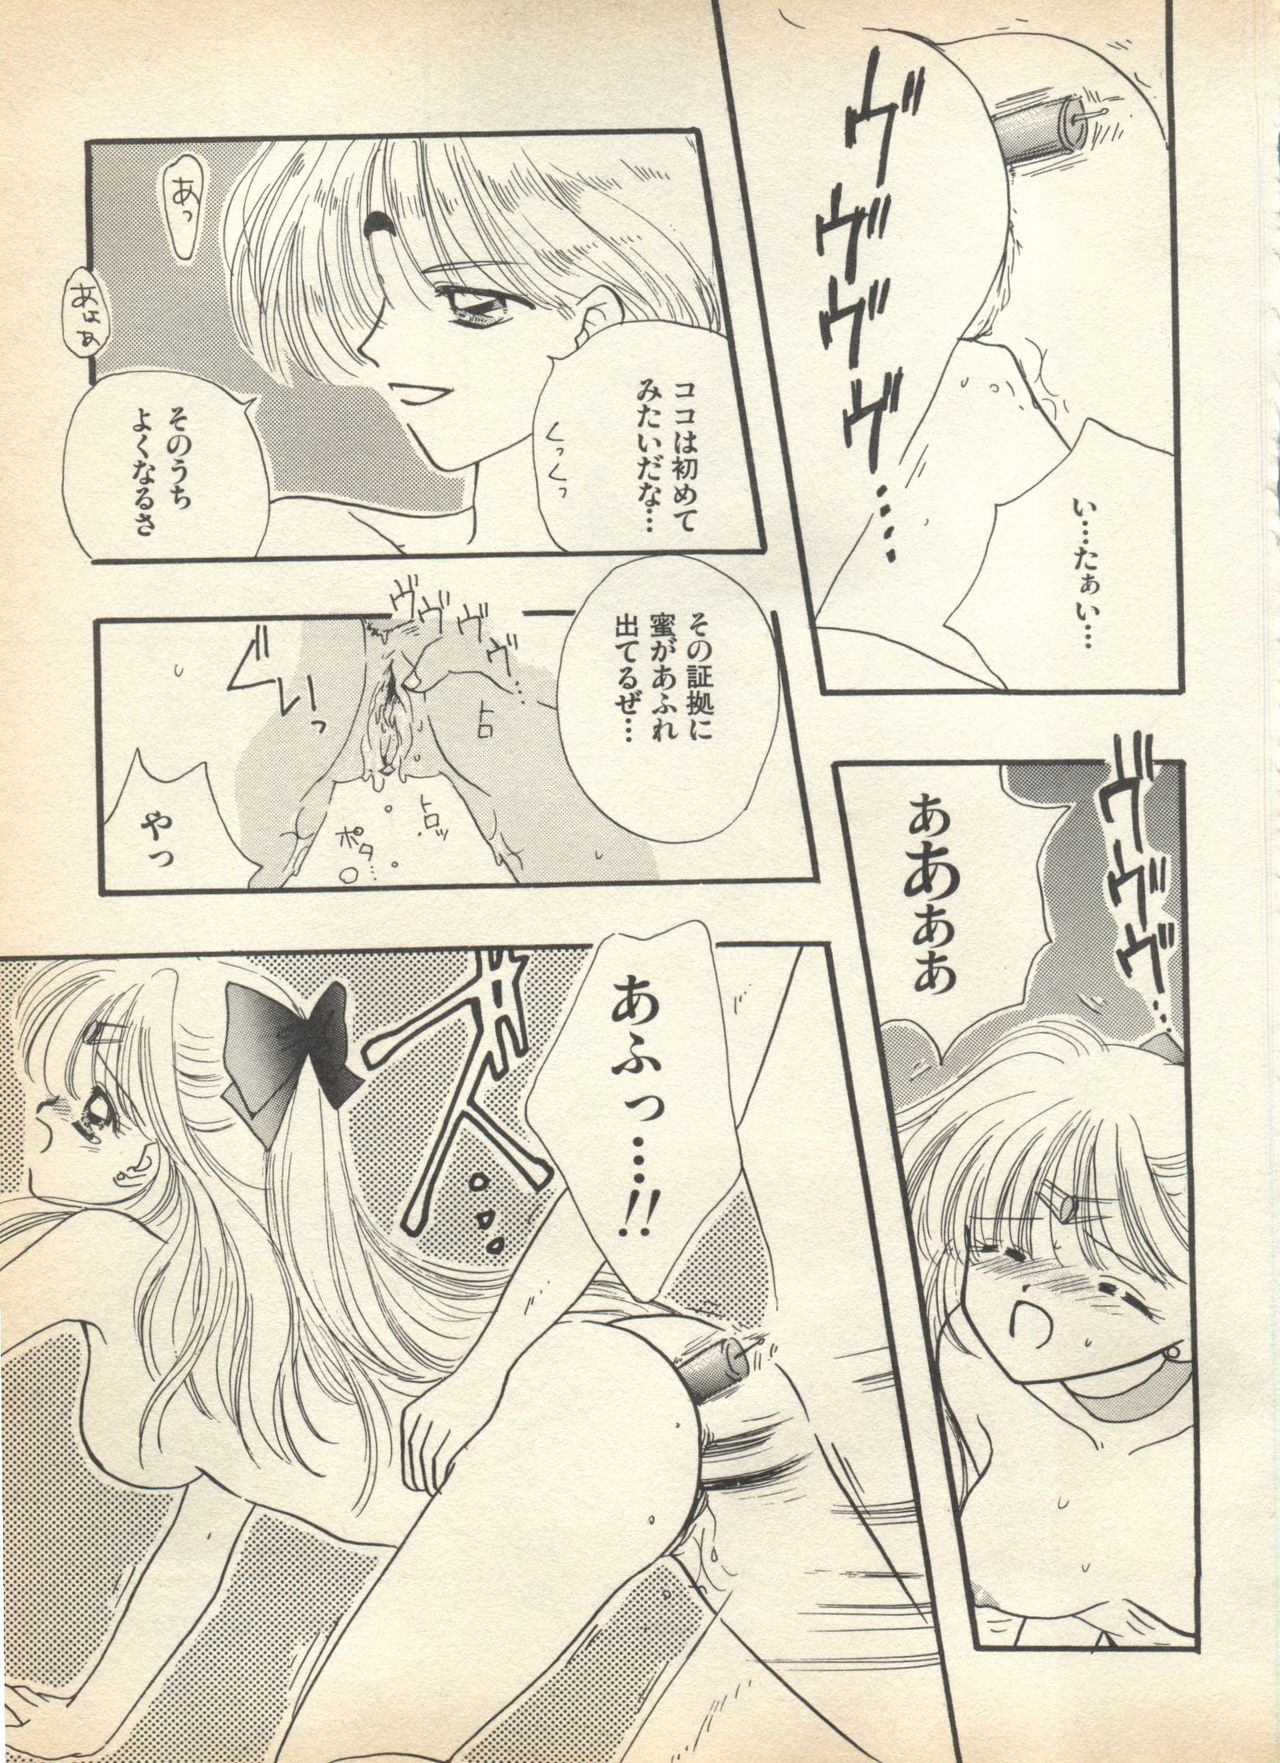 [Anthology] Lunatic Party 7 (Bishoujo Senshi Sailor Moon) 170